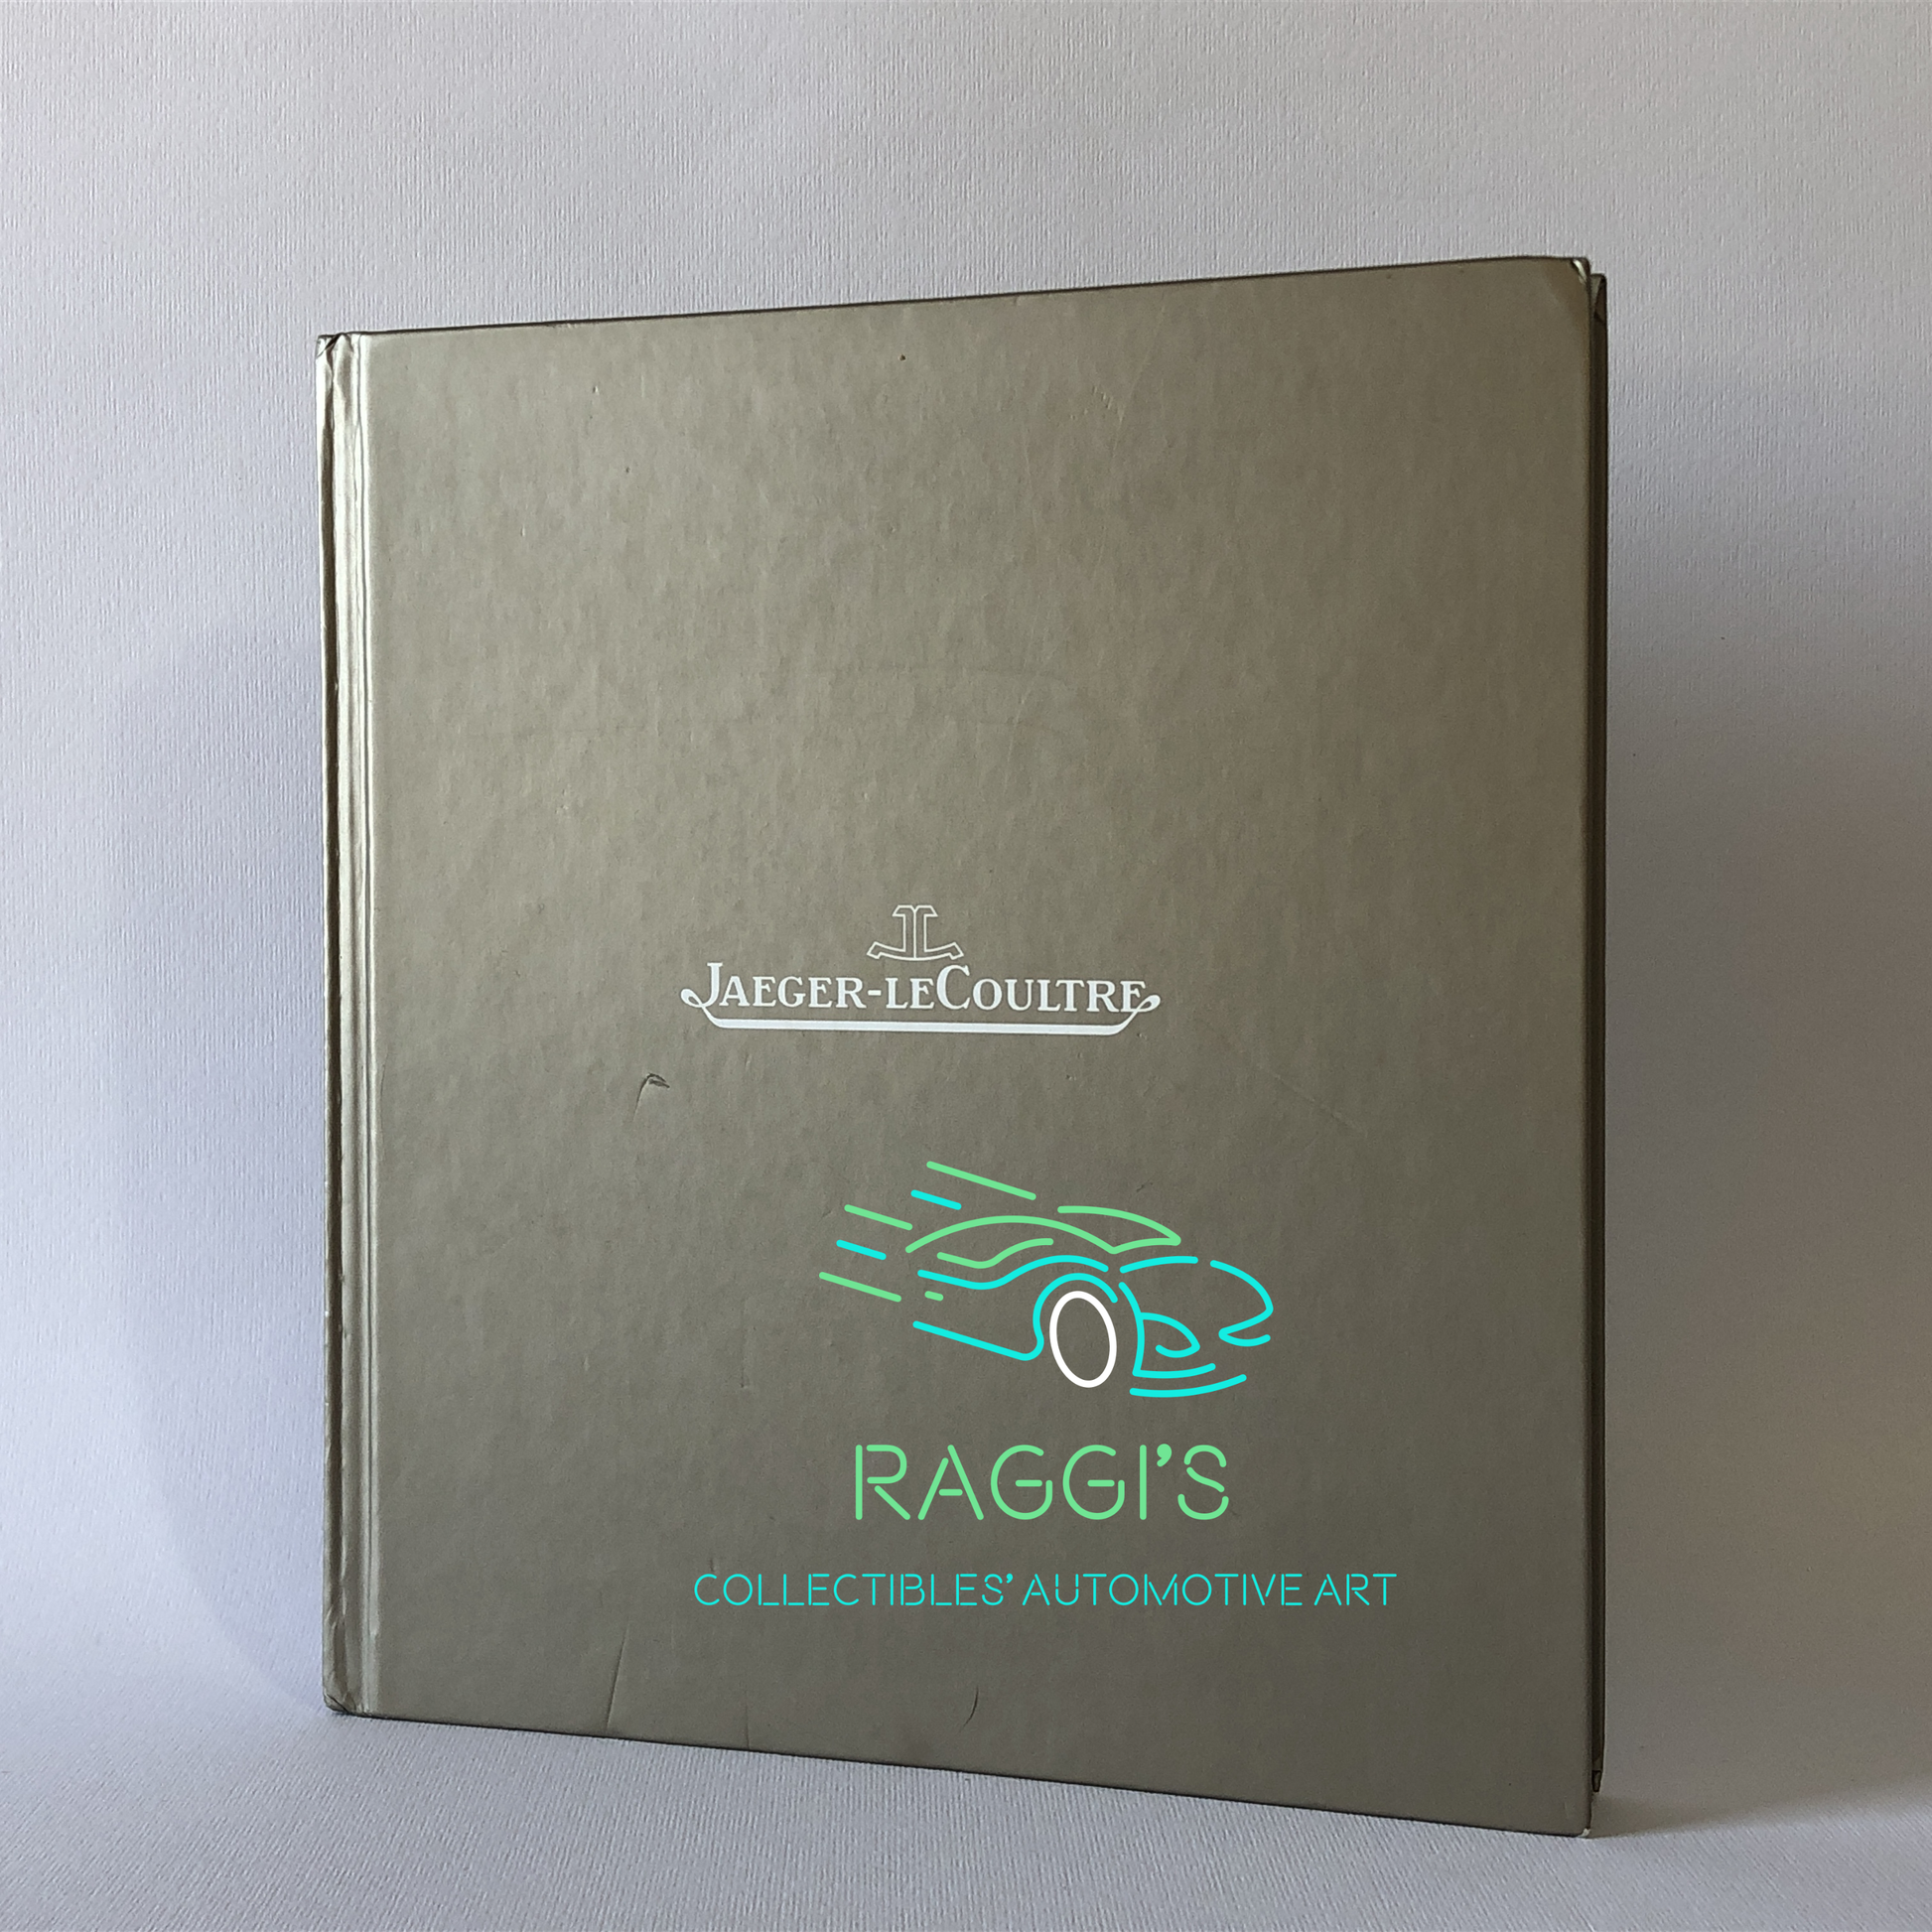 Jaeger-leCoultre, Libro Jaeger-leCoultre Pubblicato per gli Internazionali di Tennis di Roma nel 2009 - Raggi's Collectibles' Automotive Art